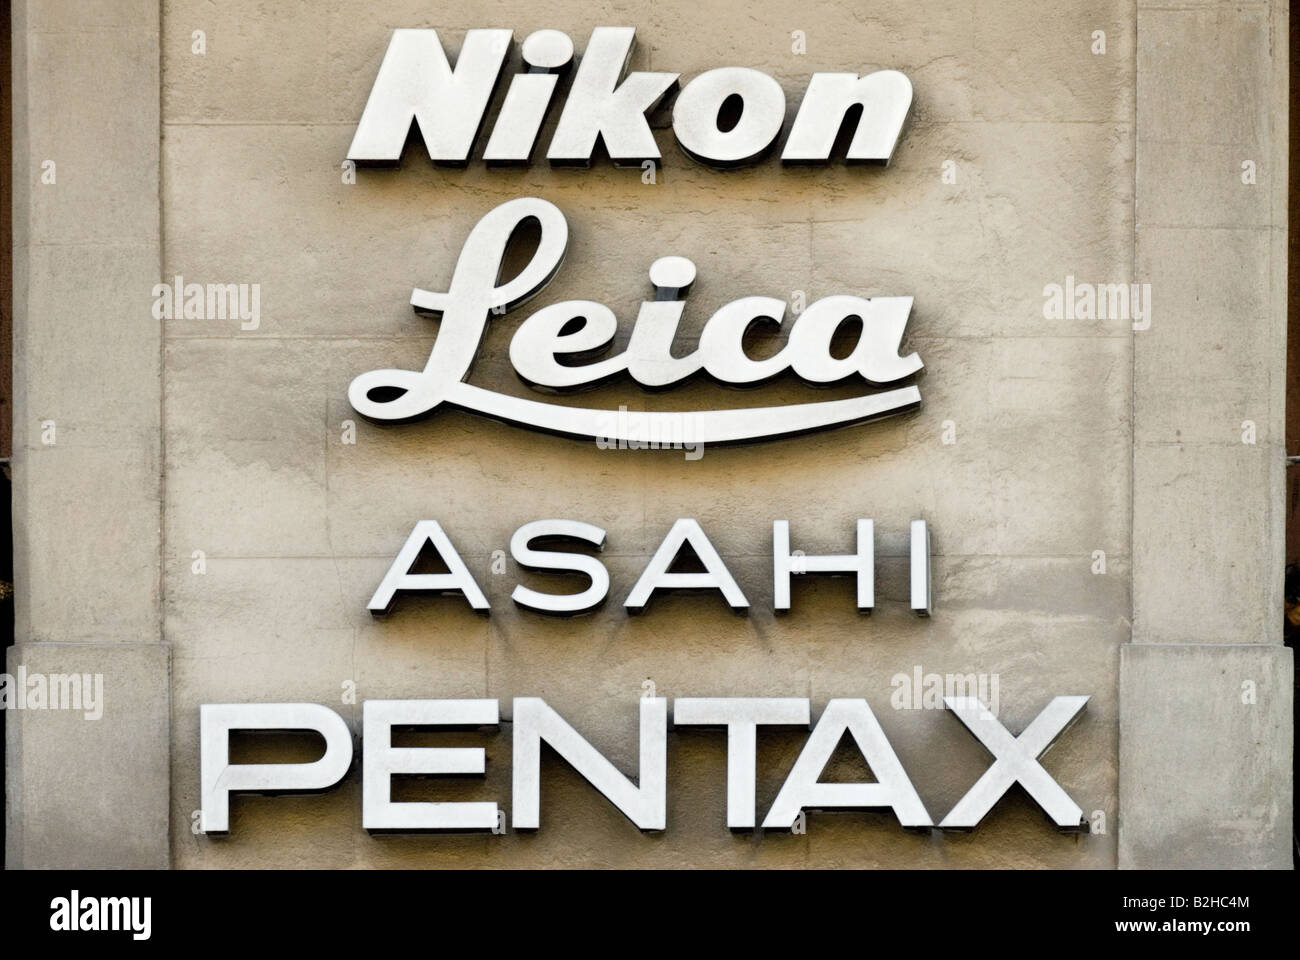 nikon leica asahi pentax sign in a wall barcelona Stock Photo